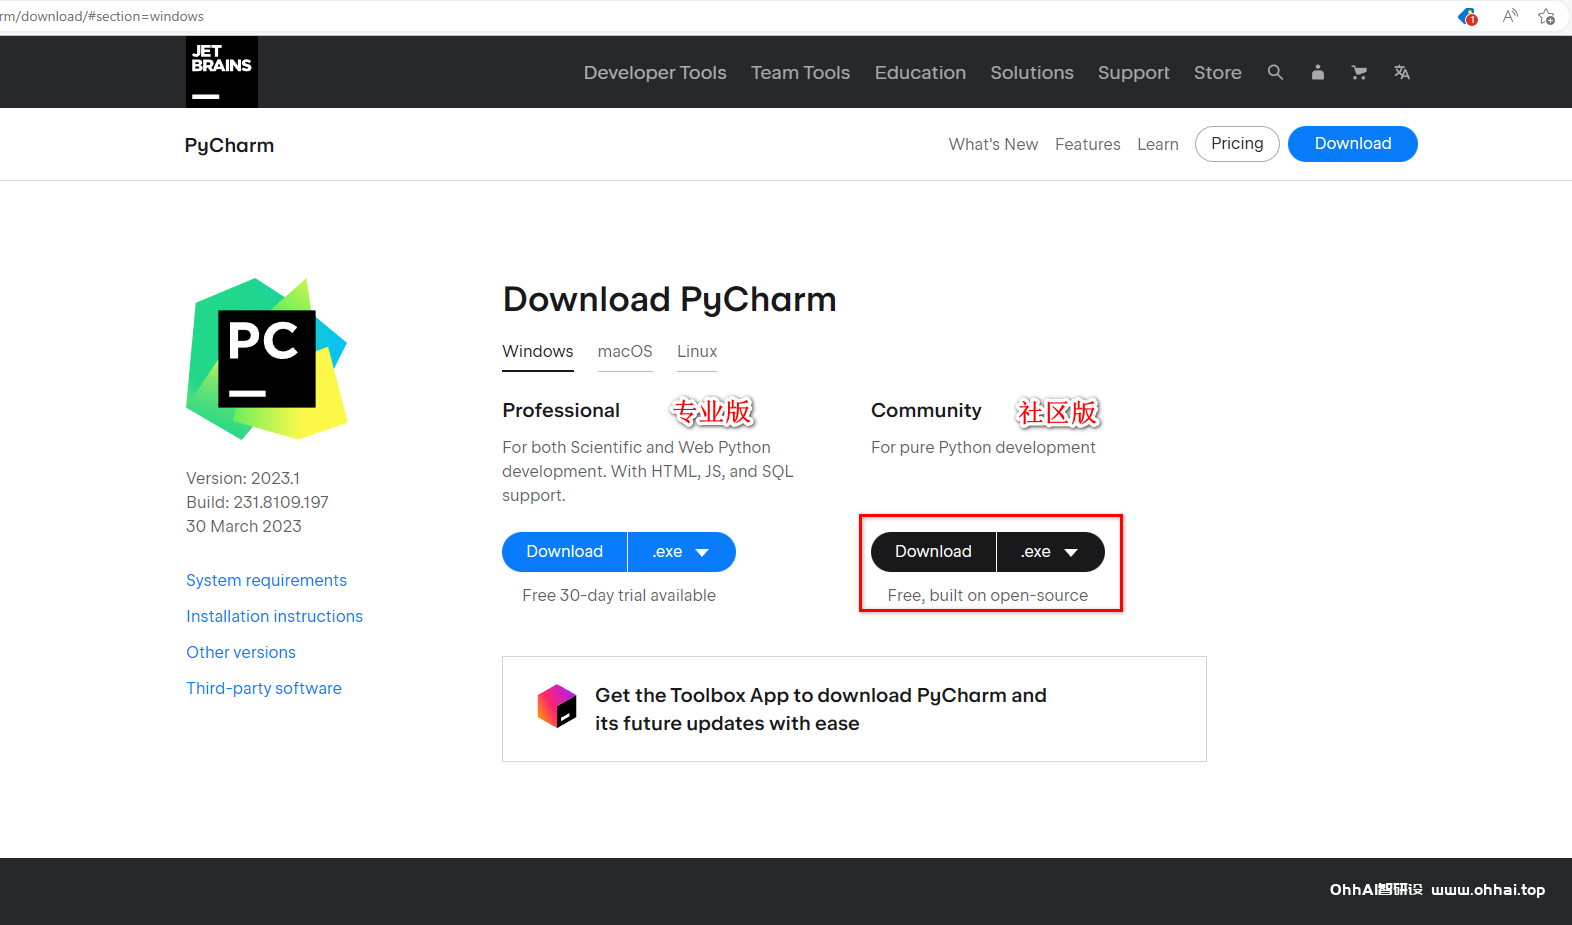 PyCharm下载和安装 - SOHUB-SOHUB